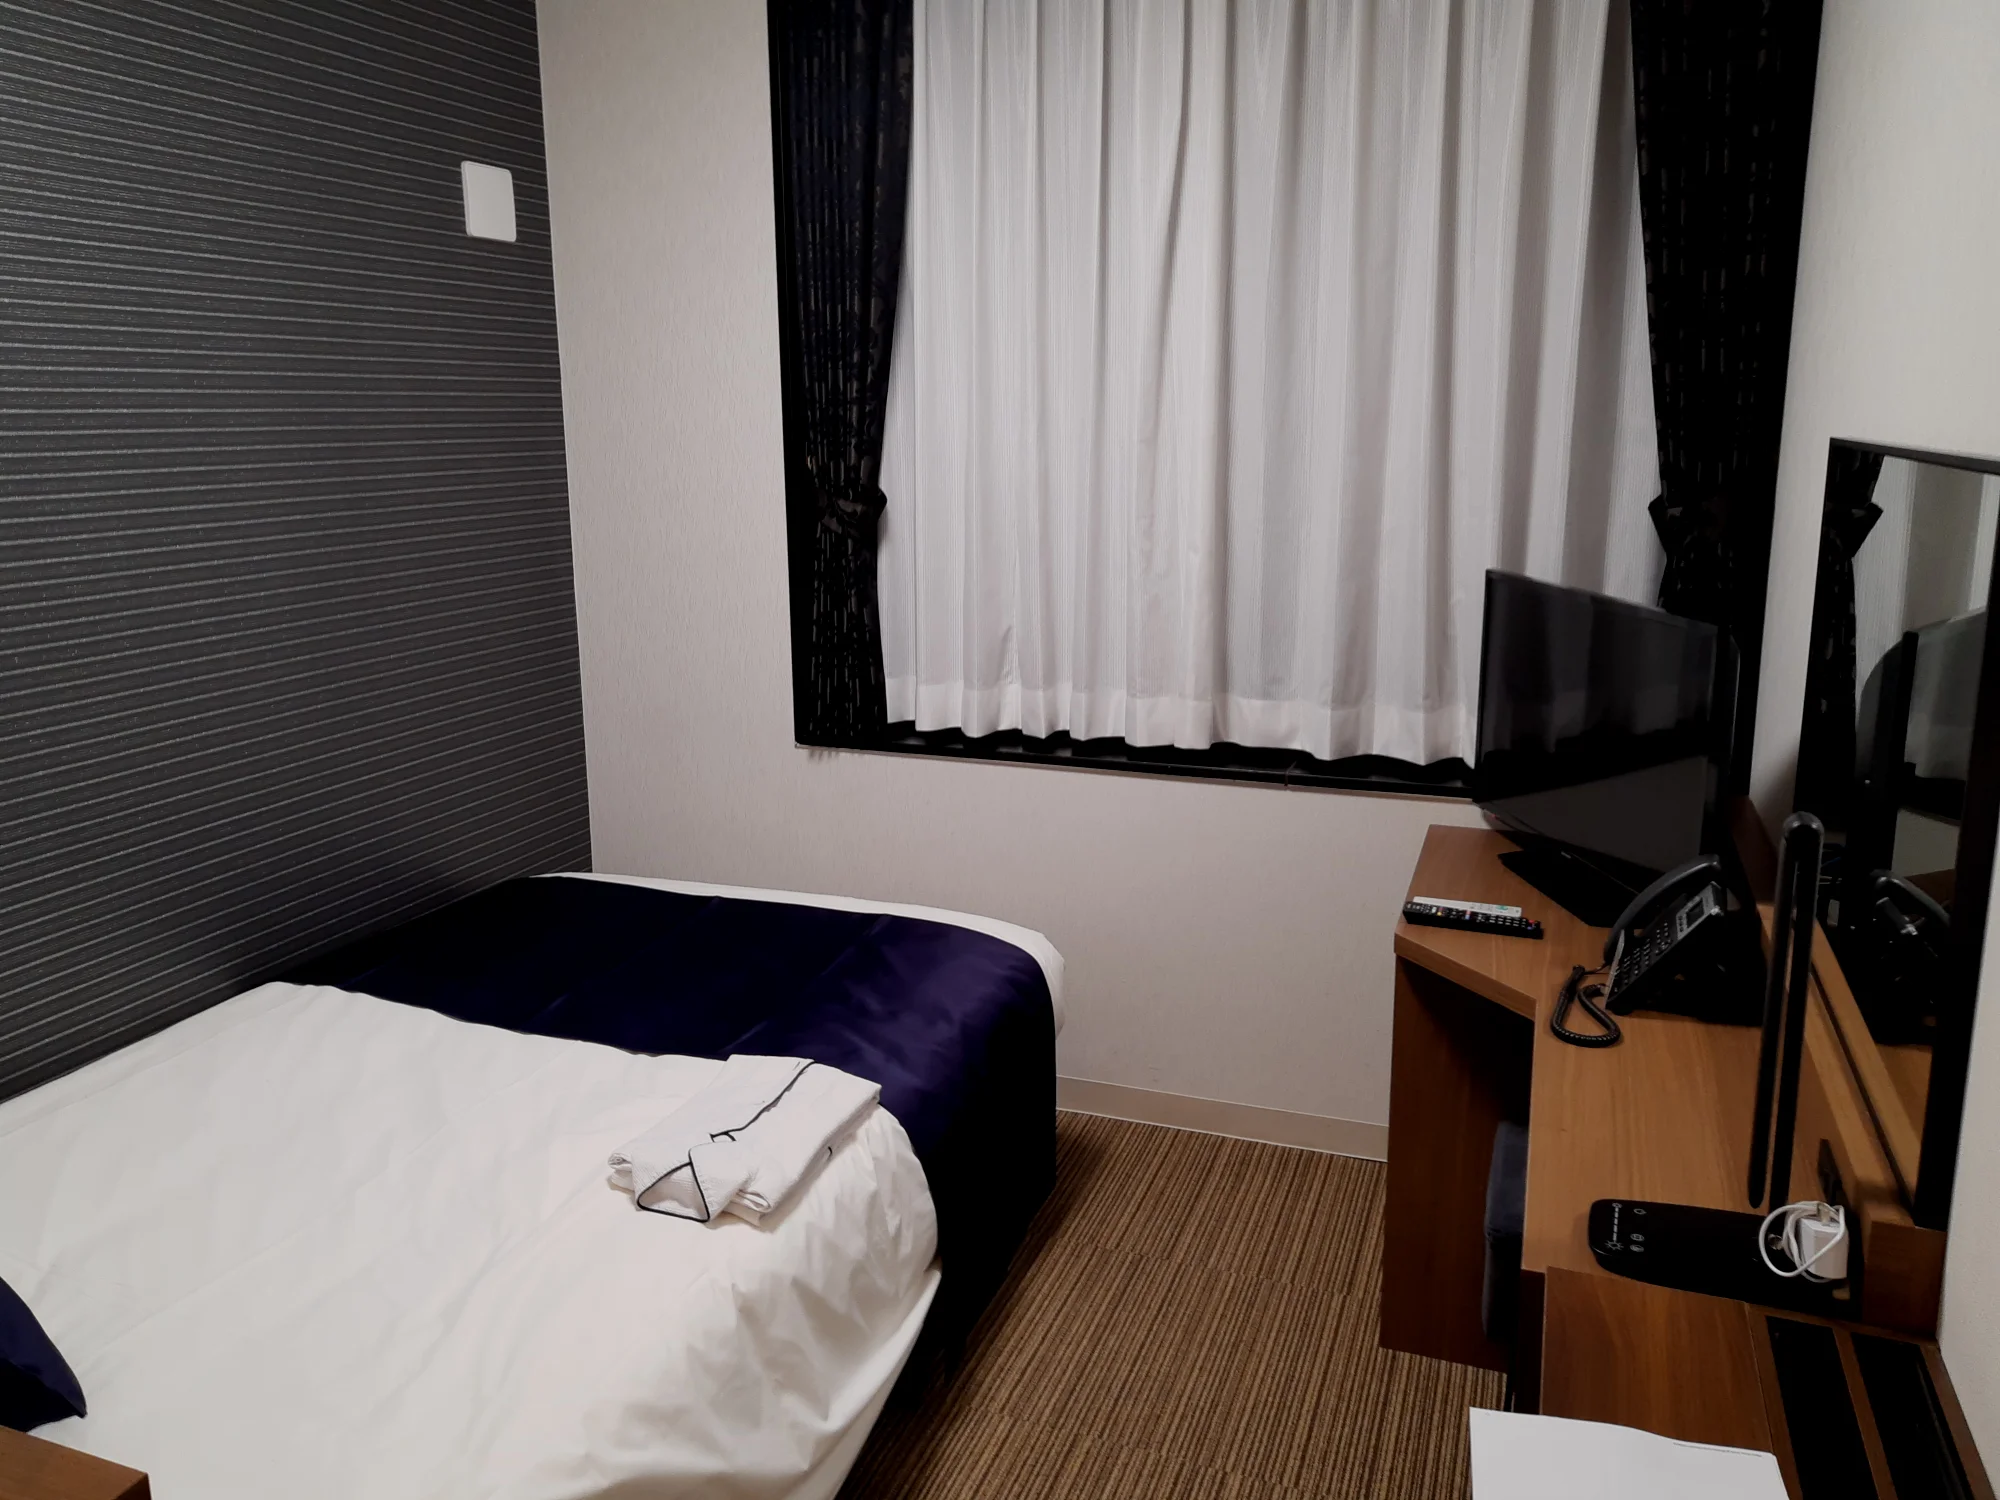 酒店只要满足洗漱和睡觉看电视的功能就可以了。